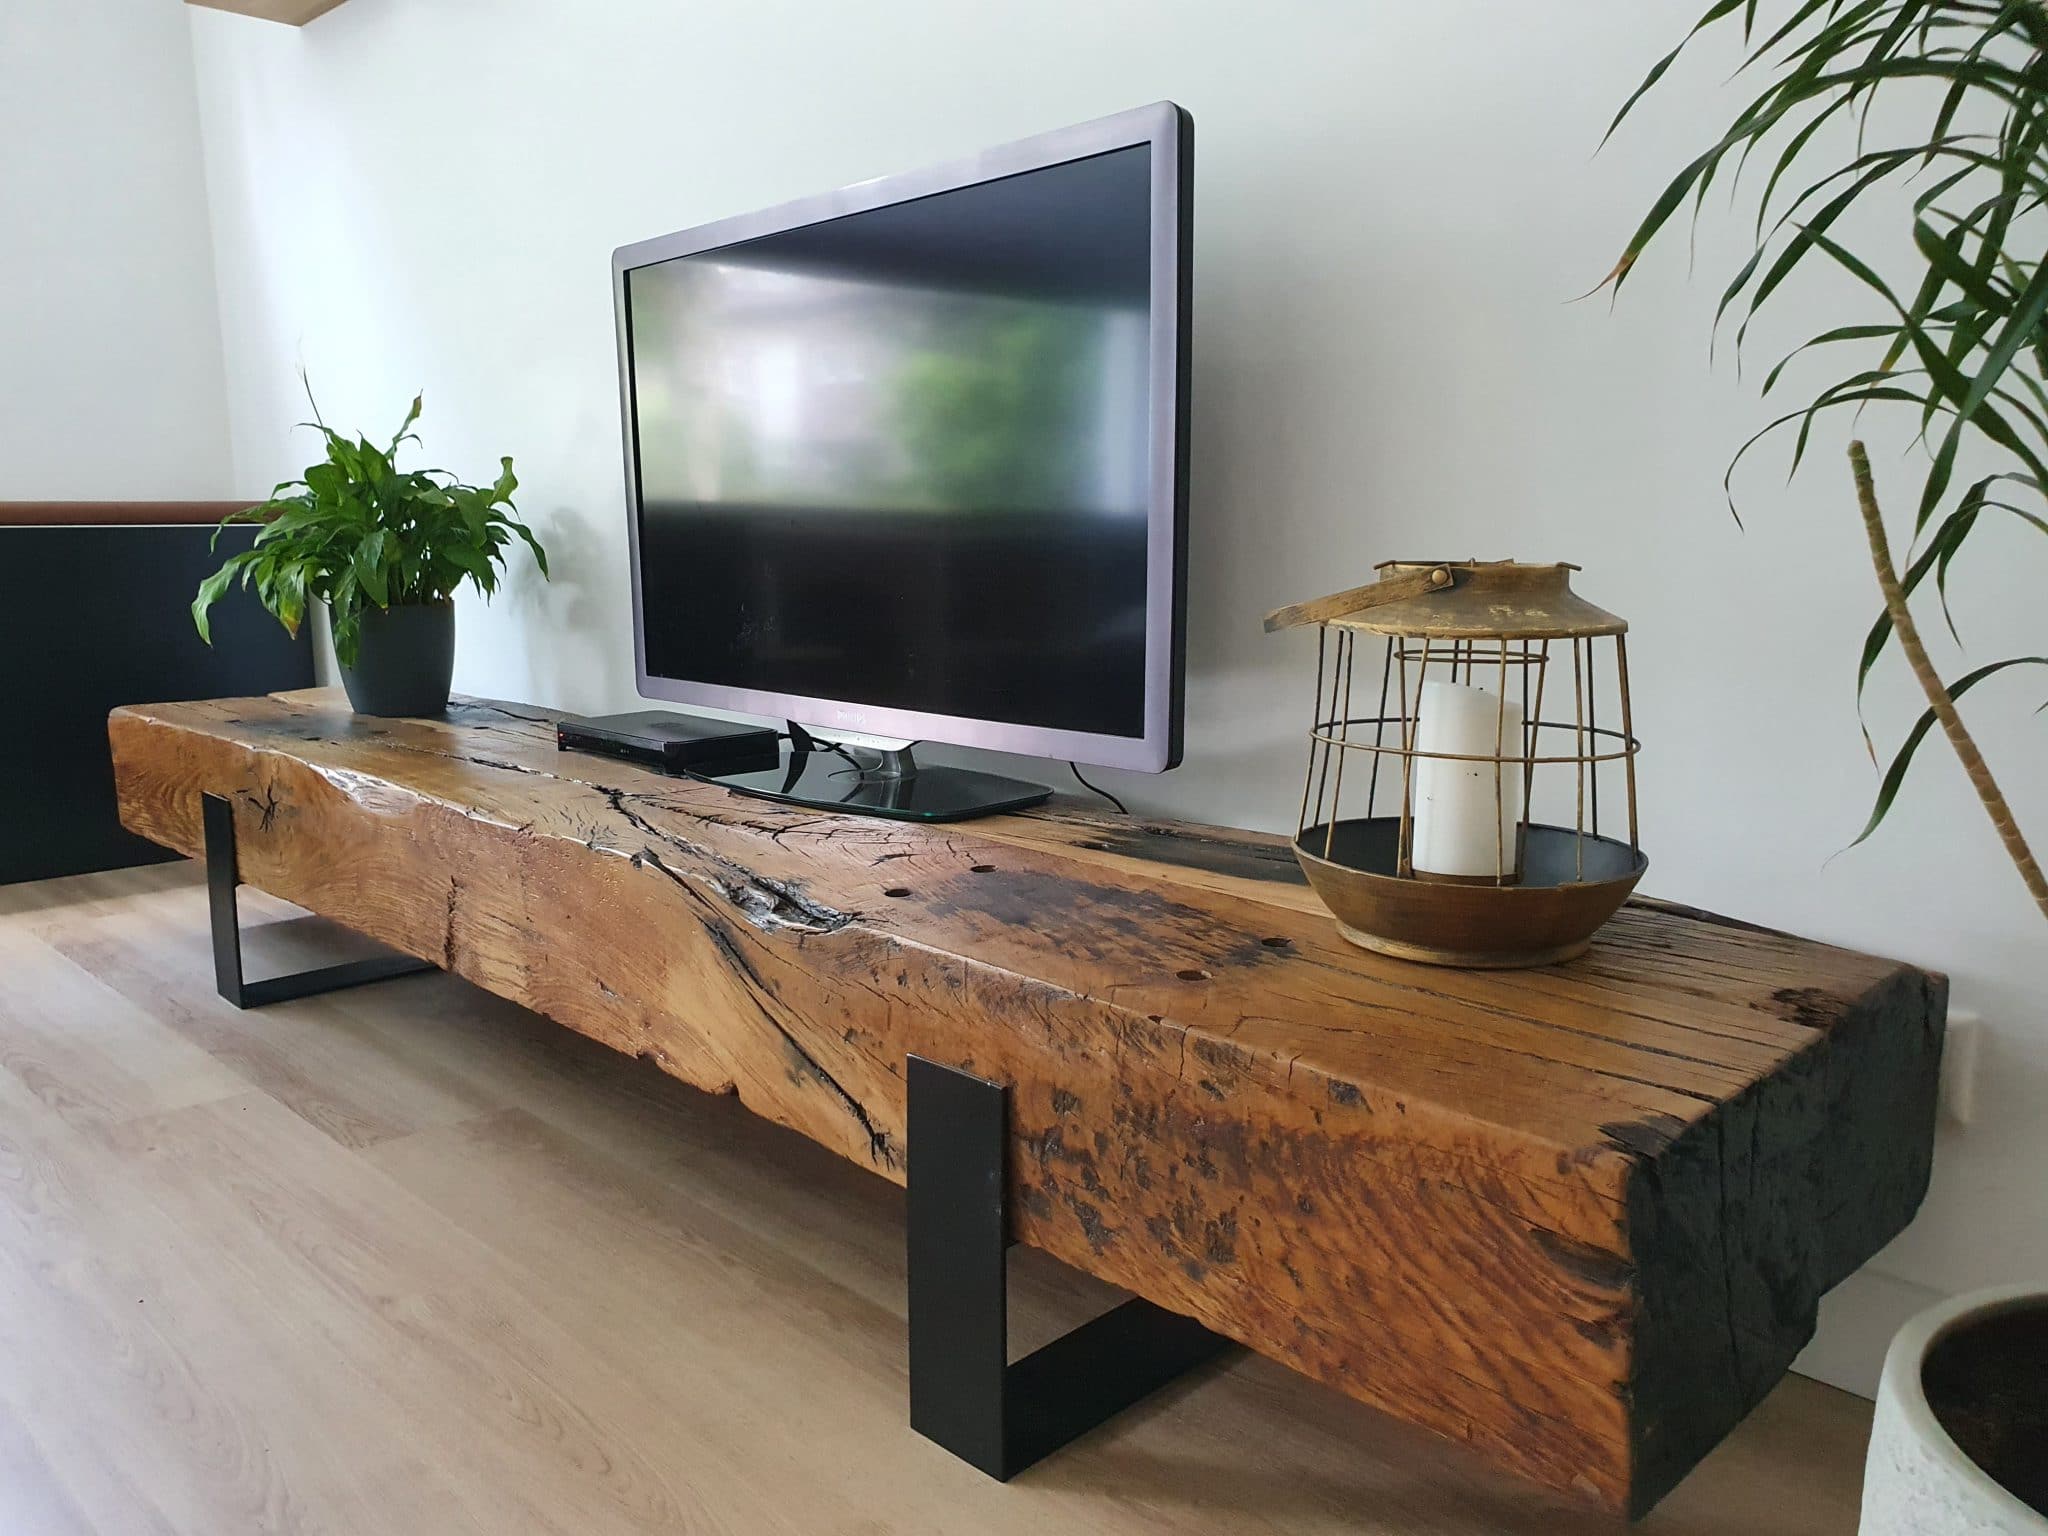 Karakteriseren toezicht houden op familie Industrieel TV-meubel | hout en staal | spoorbielzen | Maikku